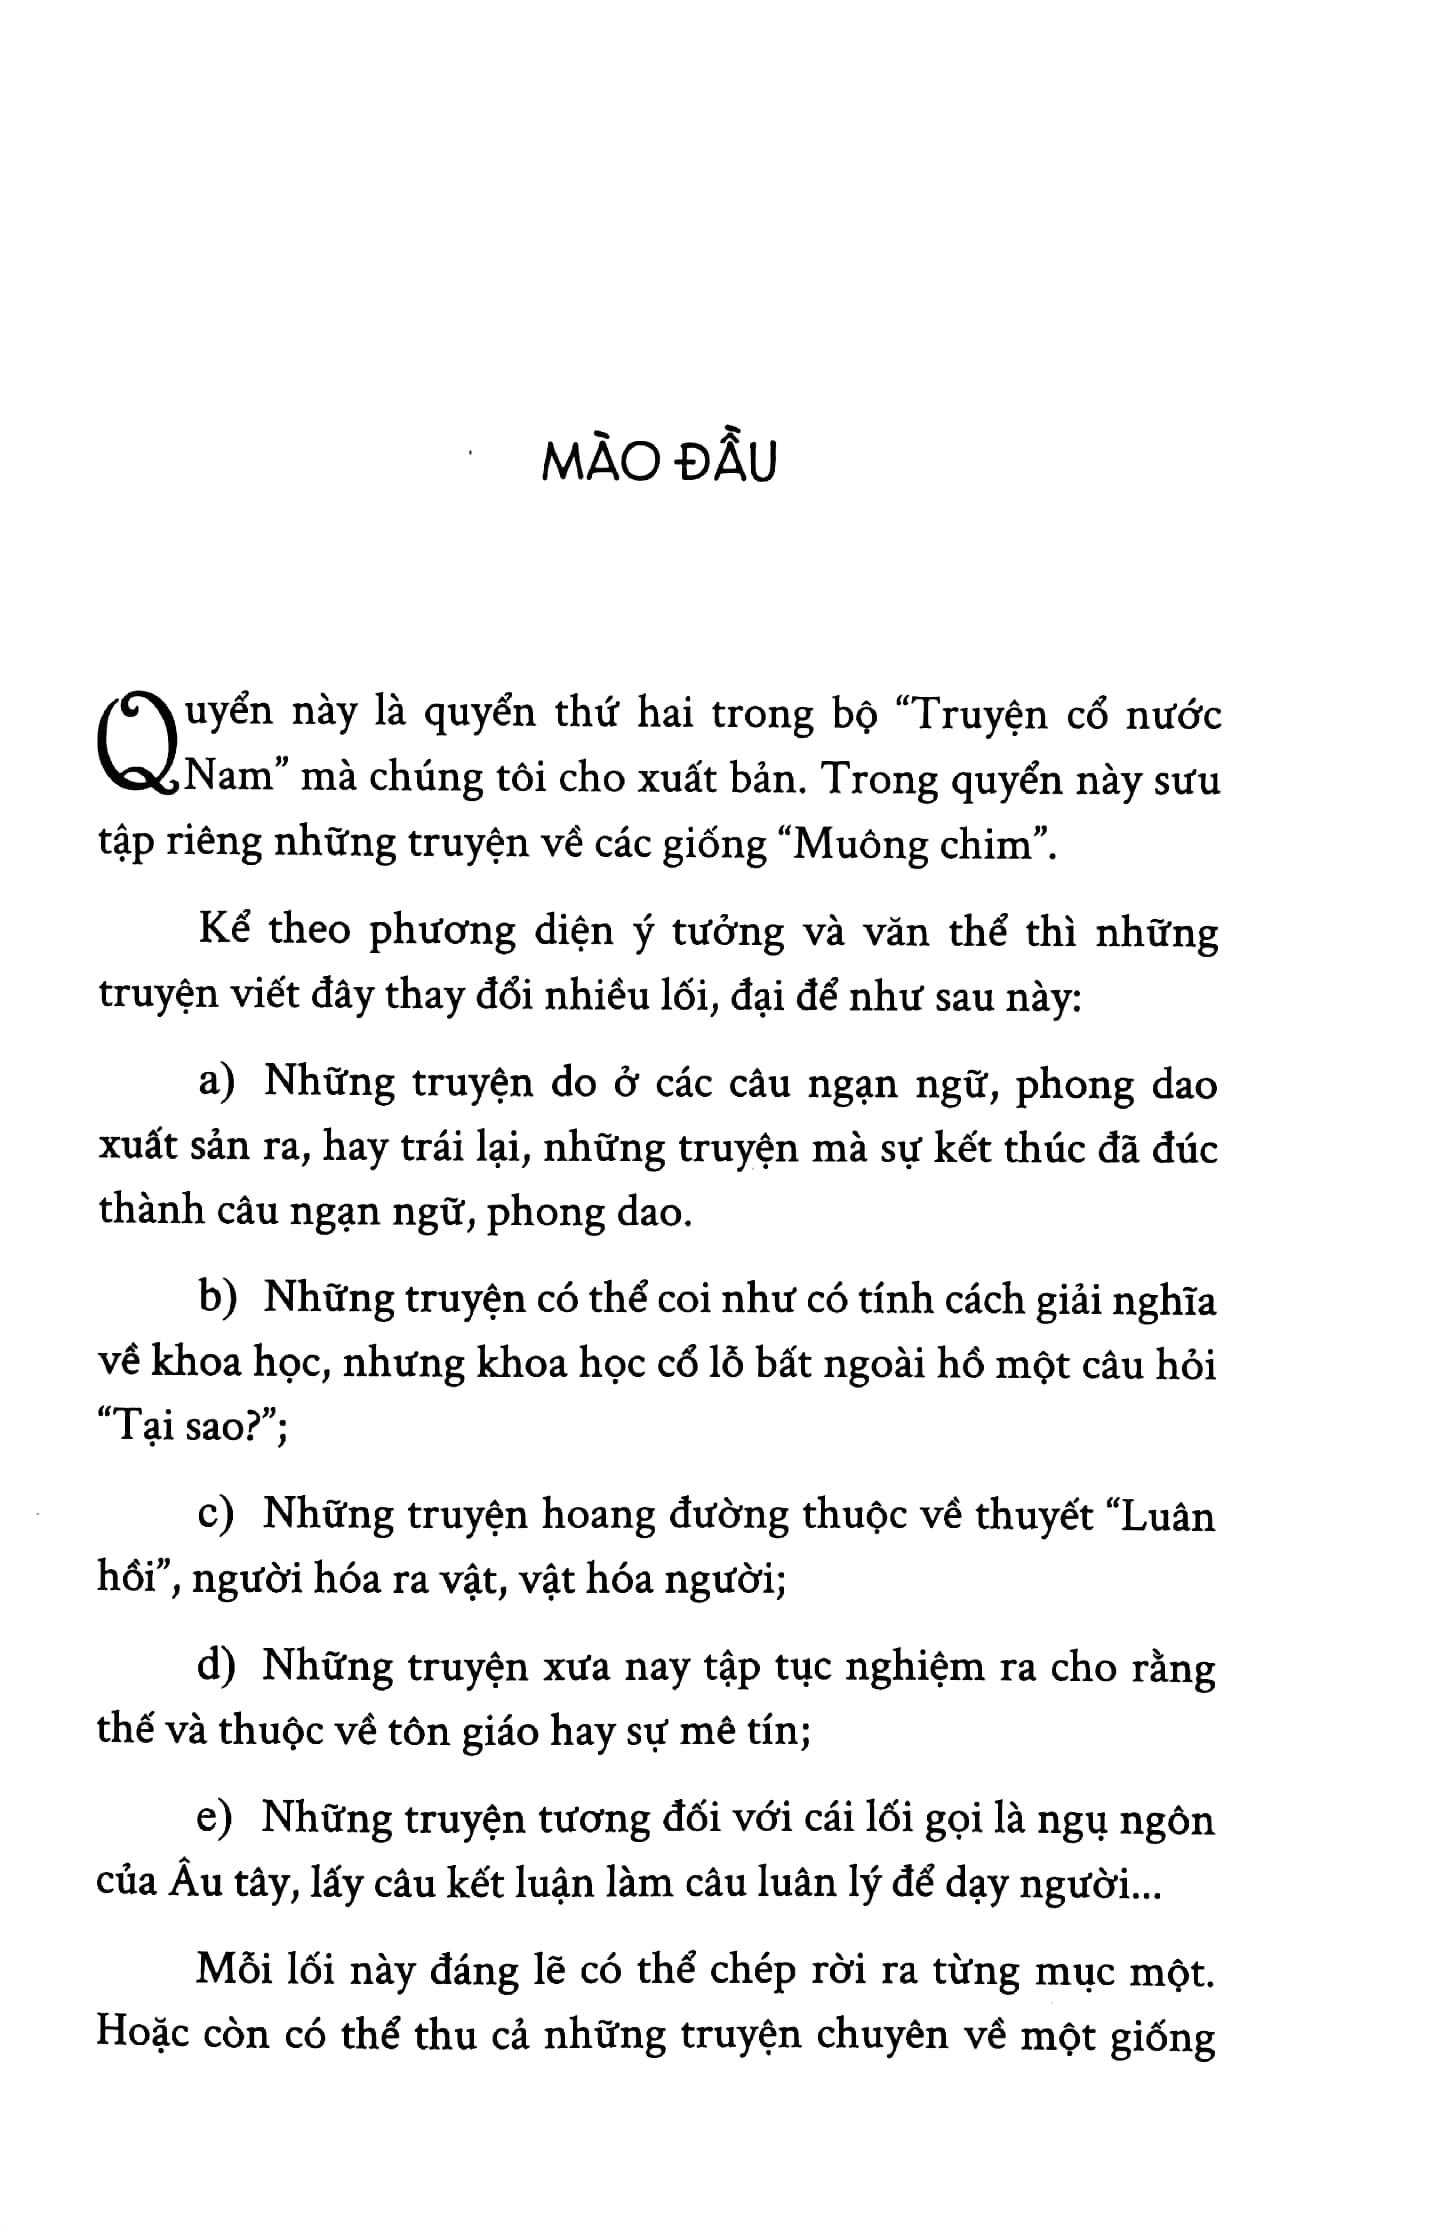 Tủ Sách Đời Người - Truyện Cổ Nước Nam: Quyển Hạ - Muông Chim PDF